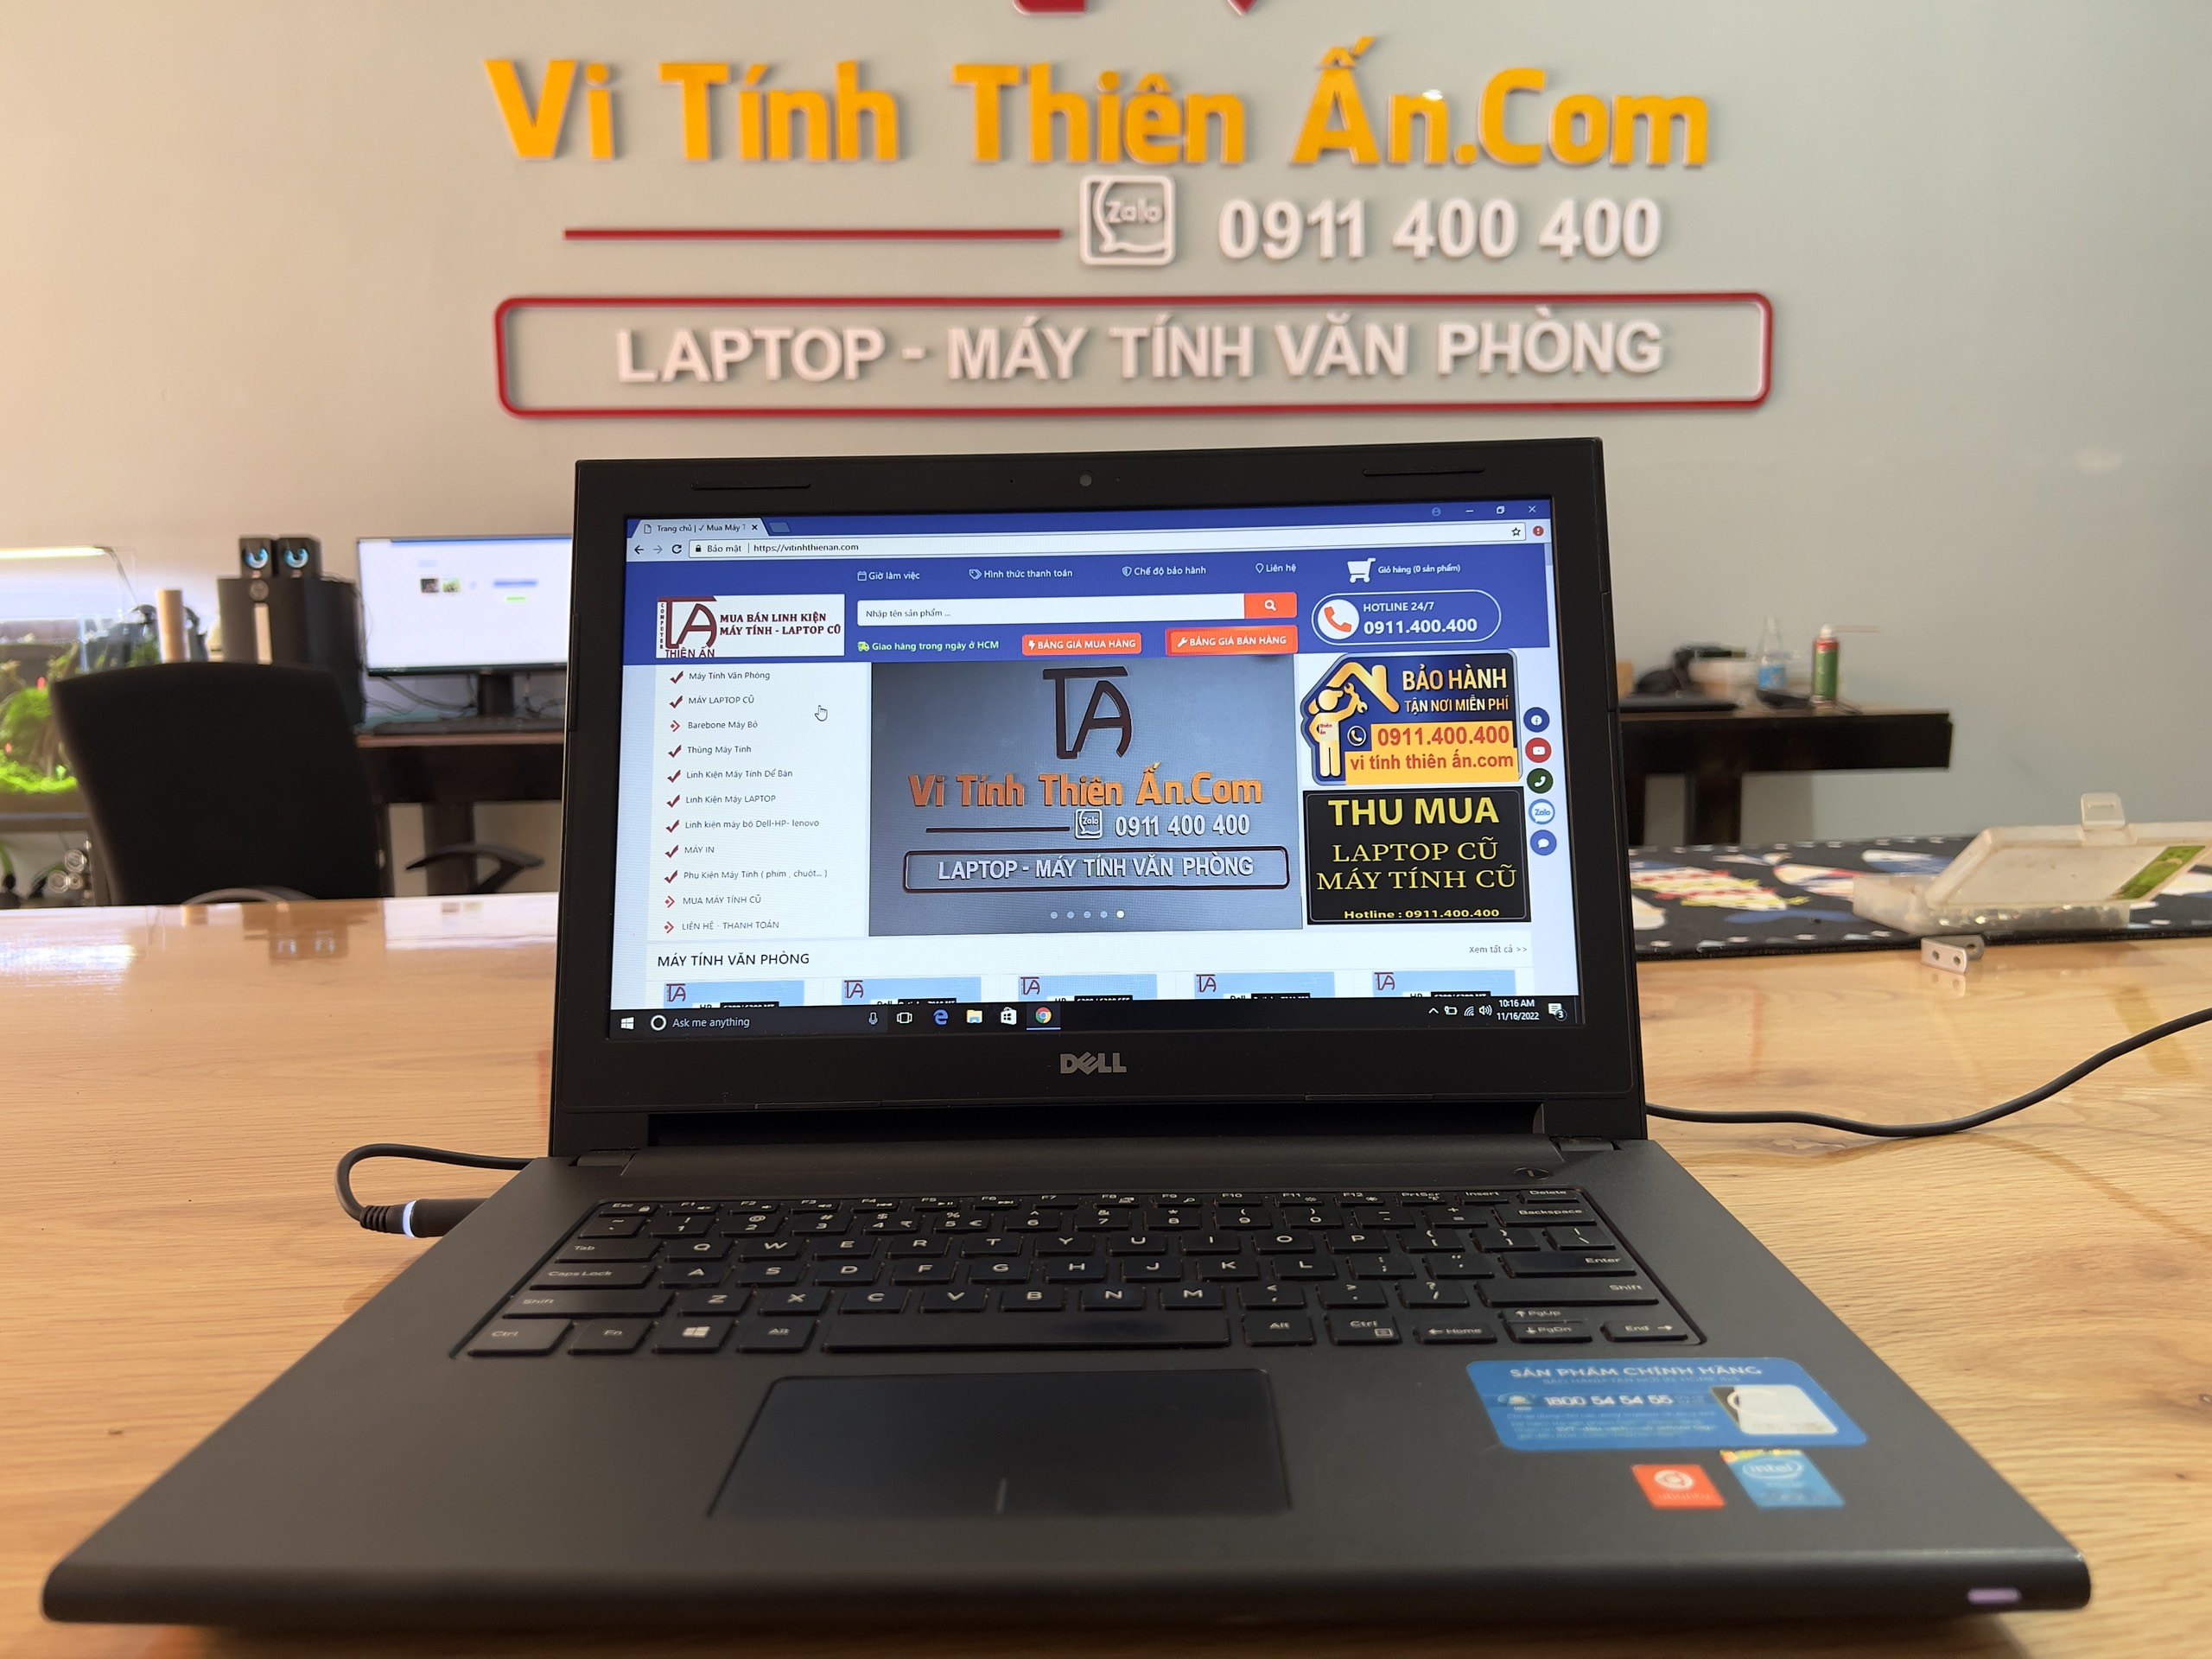 Laptop Samsung i5 thế hệ 6 phù hợp văn phòng , chơi game 